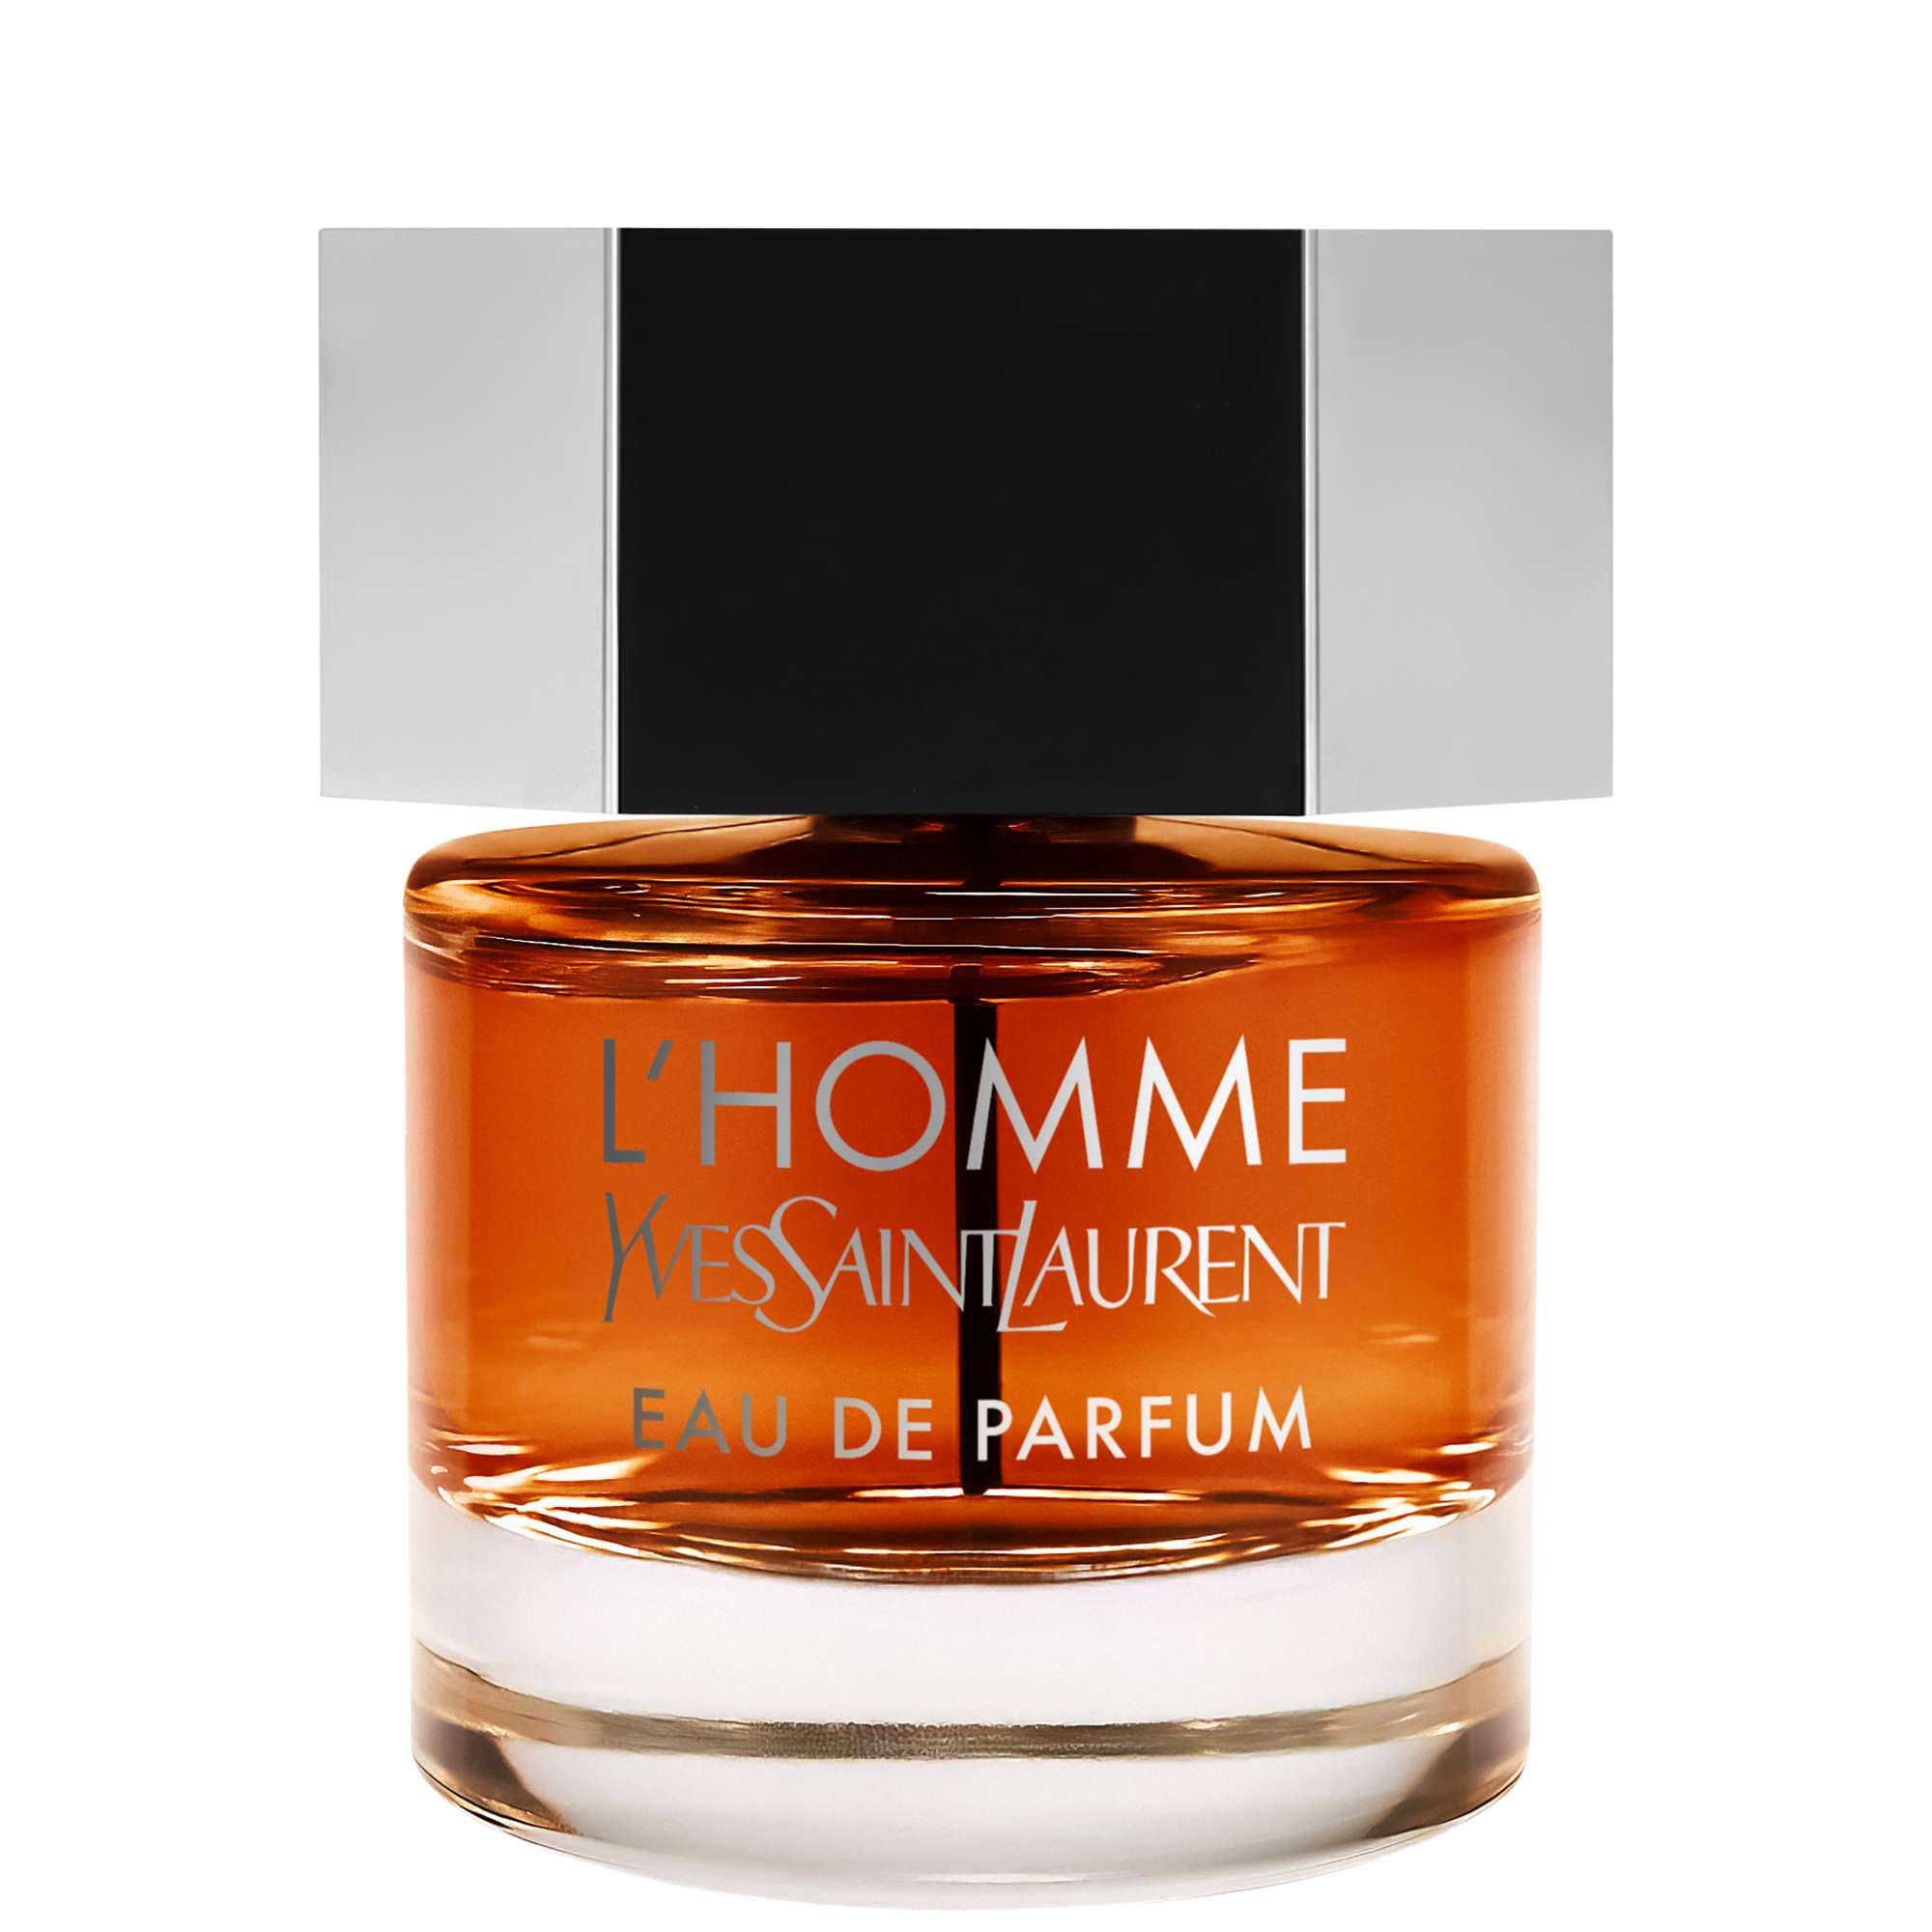 Photos - Men's Fragrance Yves Saint Laurent L'Homme Eau de Parfum Spray 60ml 